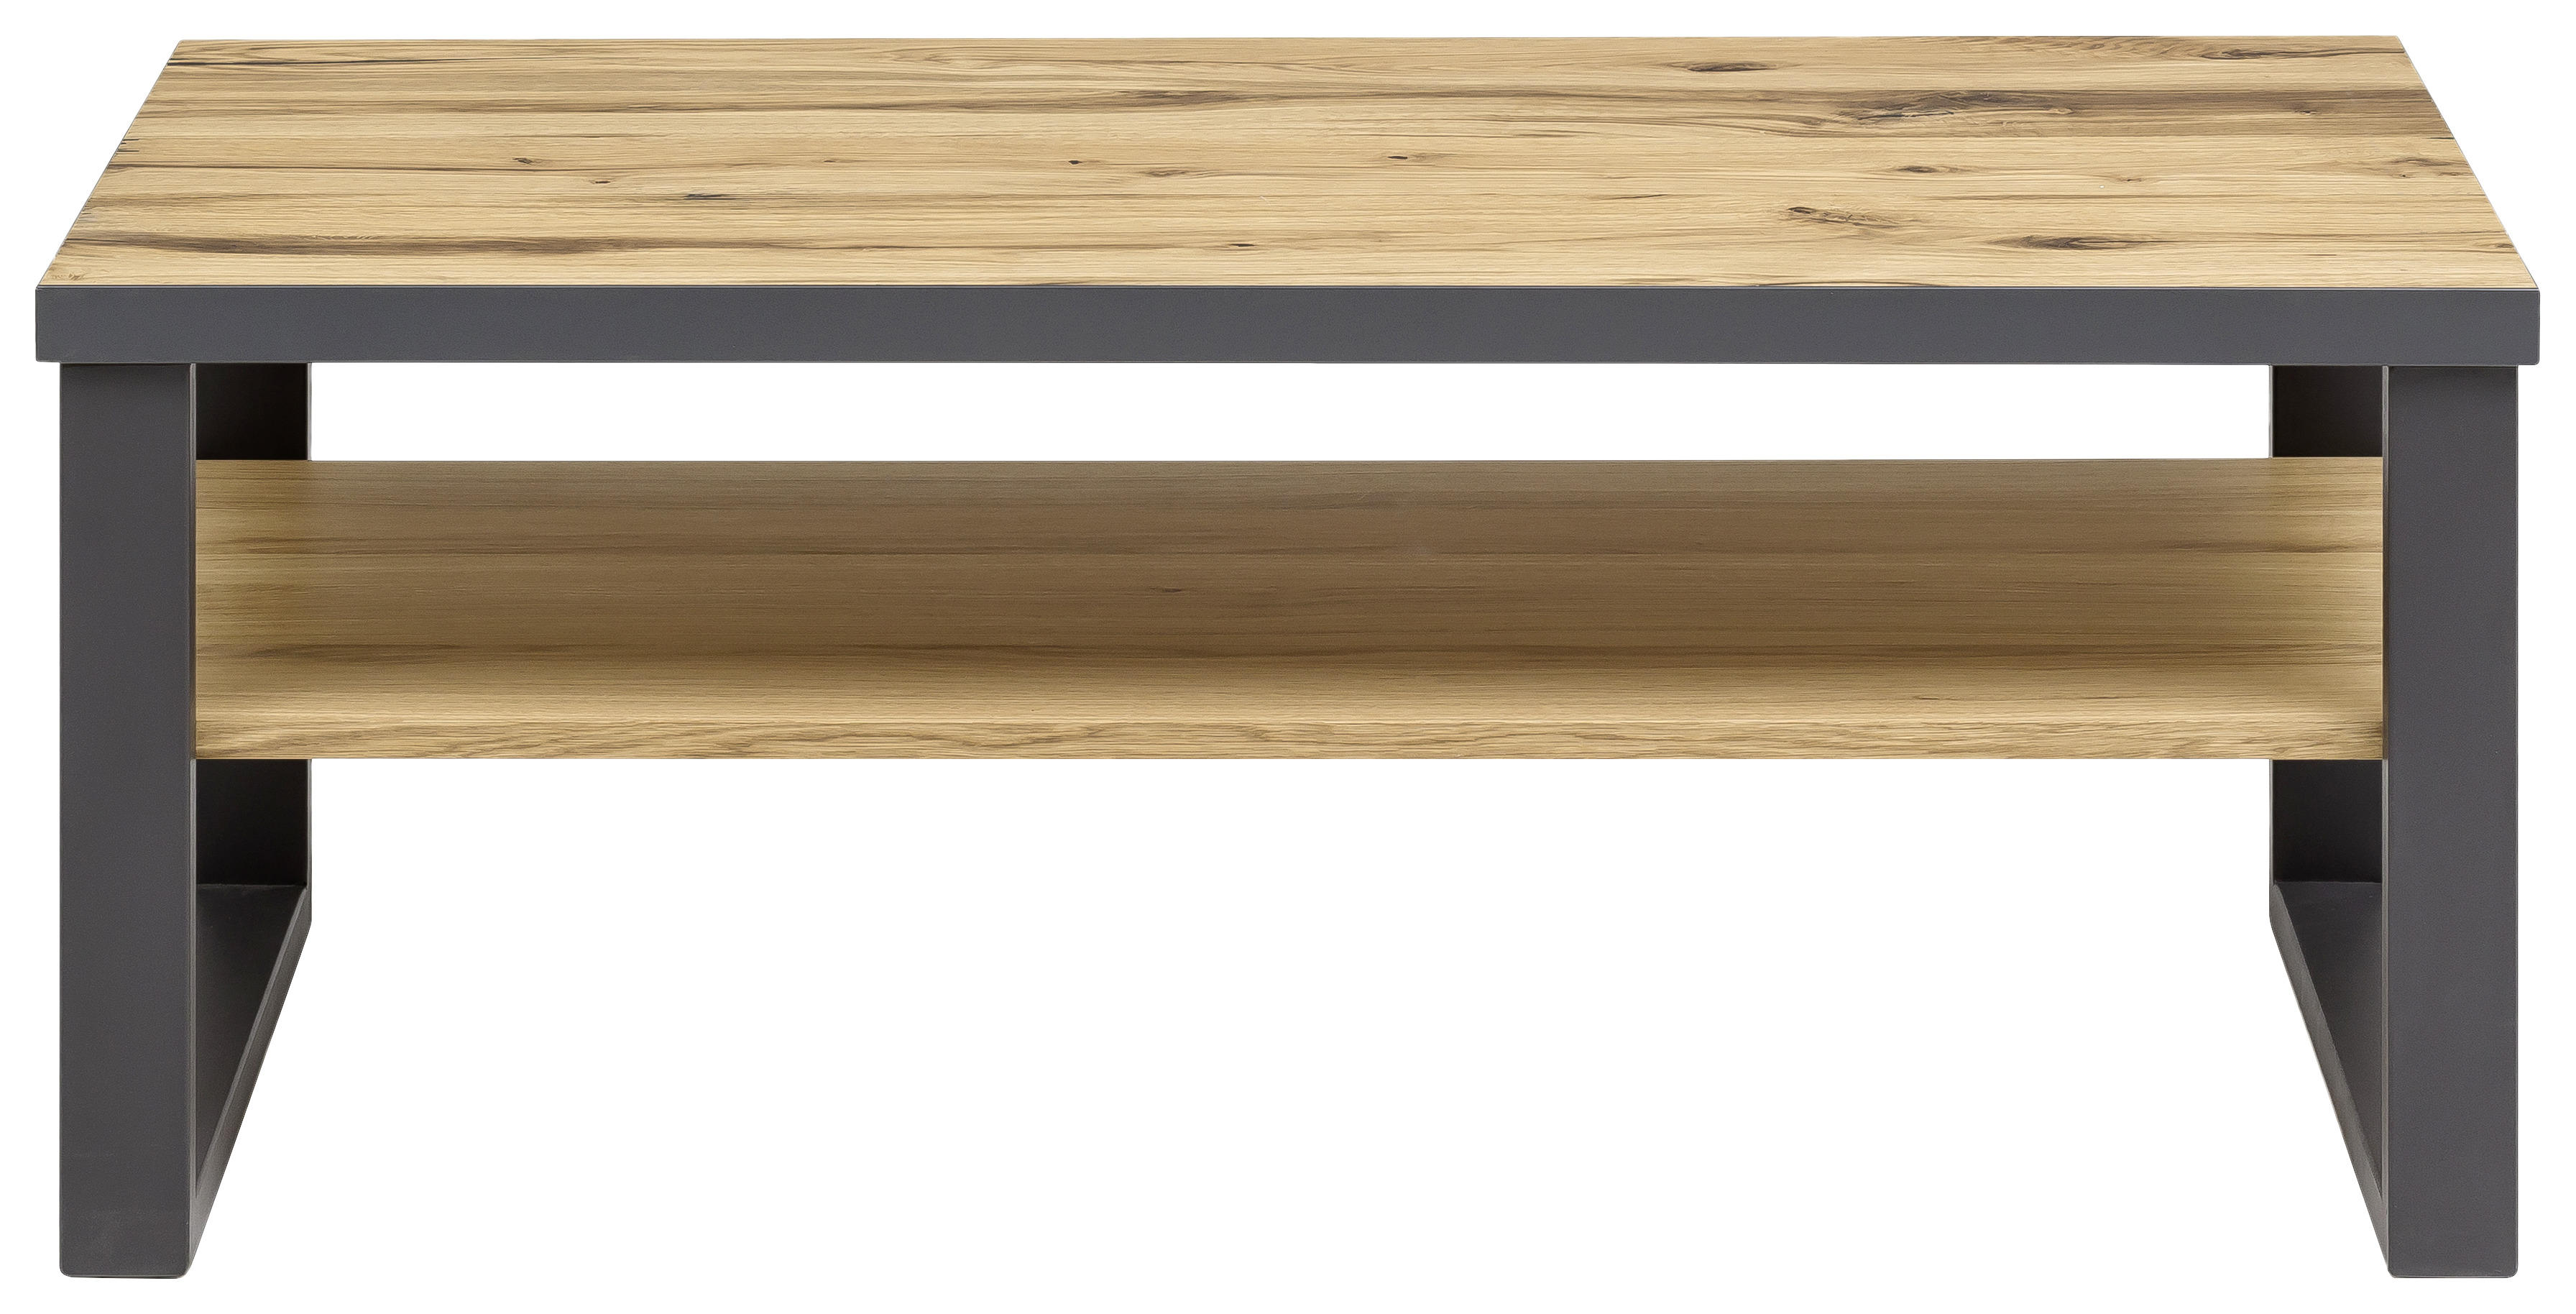 COUCHTISCH Eiche furniert rechteckig Alteiche  - Alteiche/Graphitfarben, Trend, Holz/Metall (115/65/45cm) - Carryhome